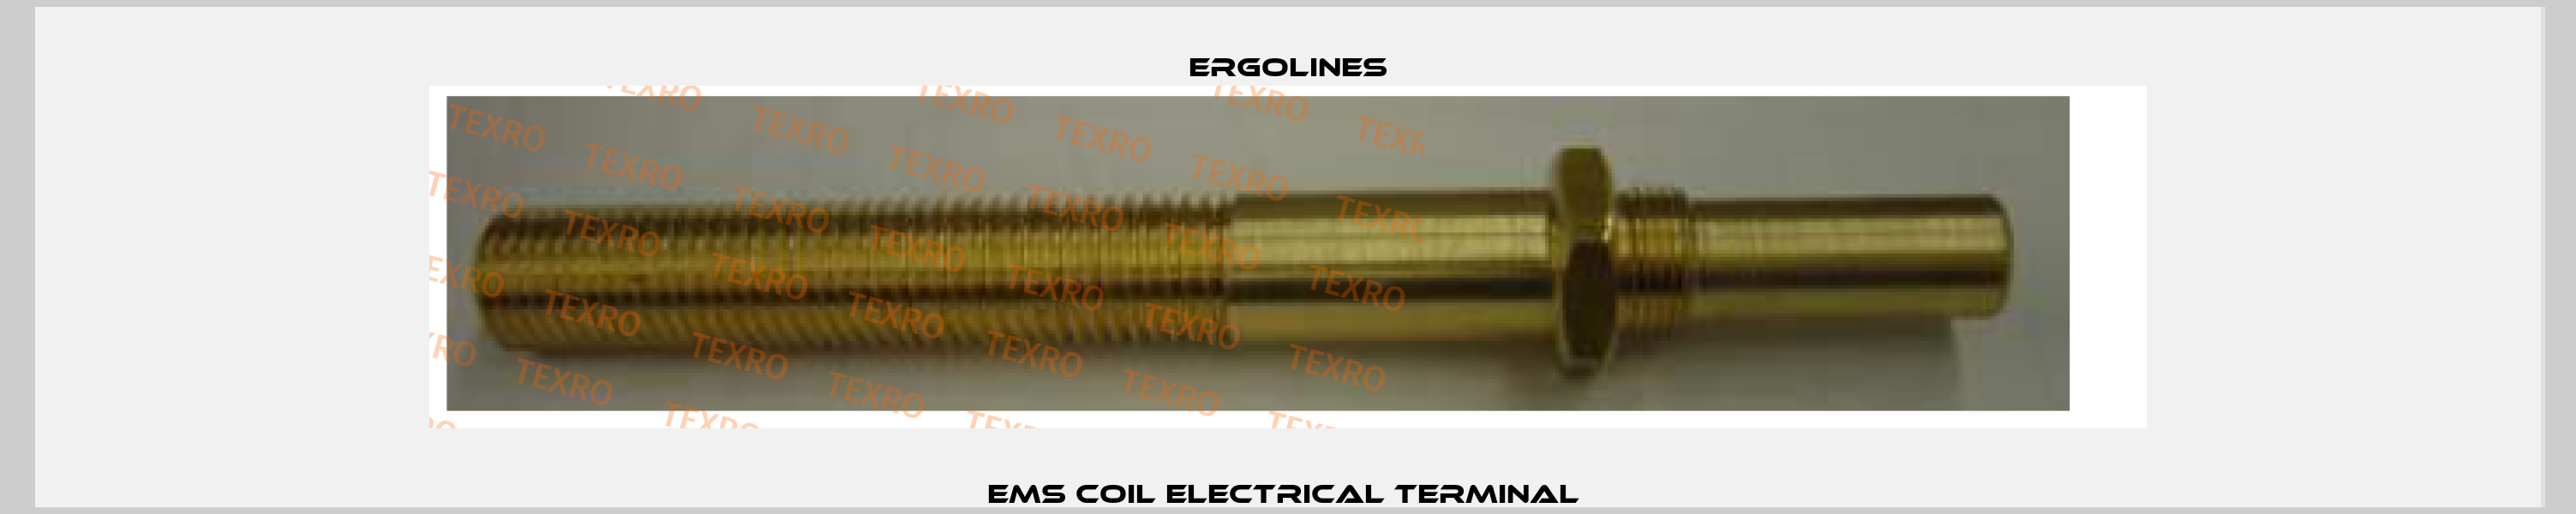 EMS coil electrical terminal  Ergolines